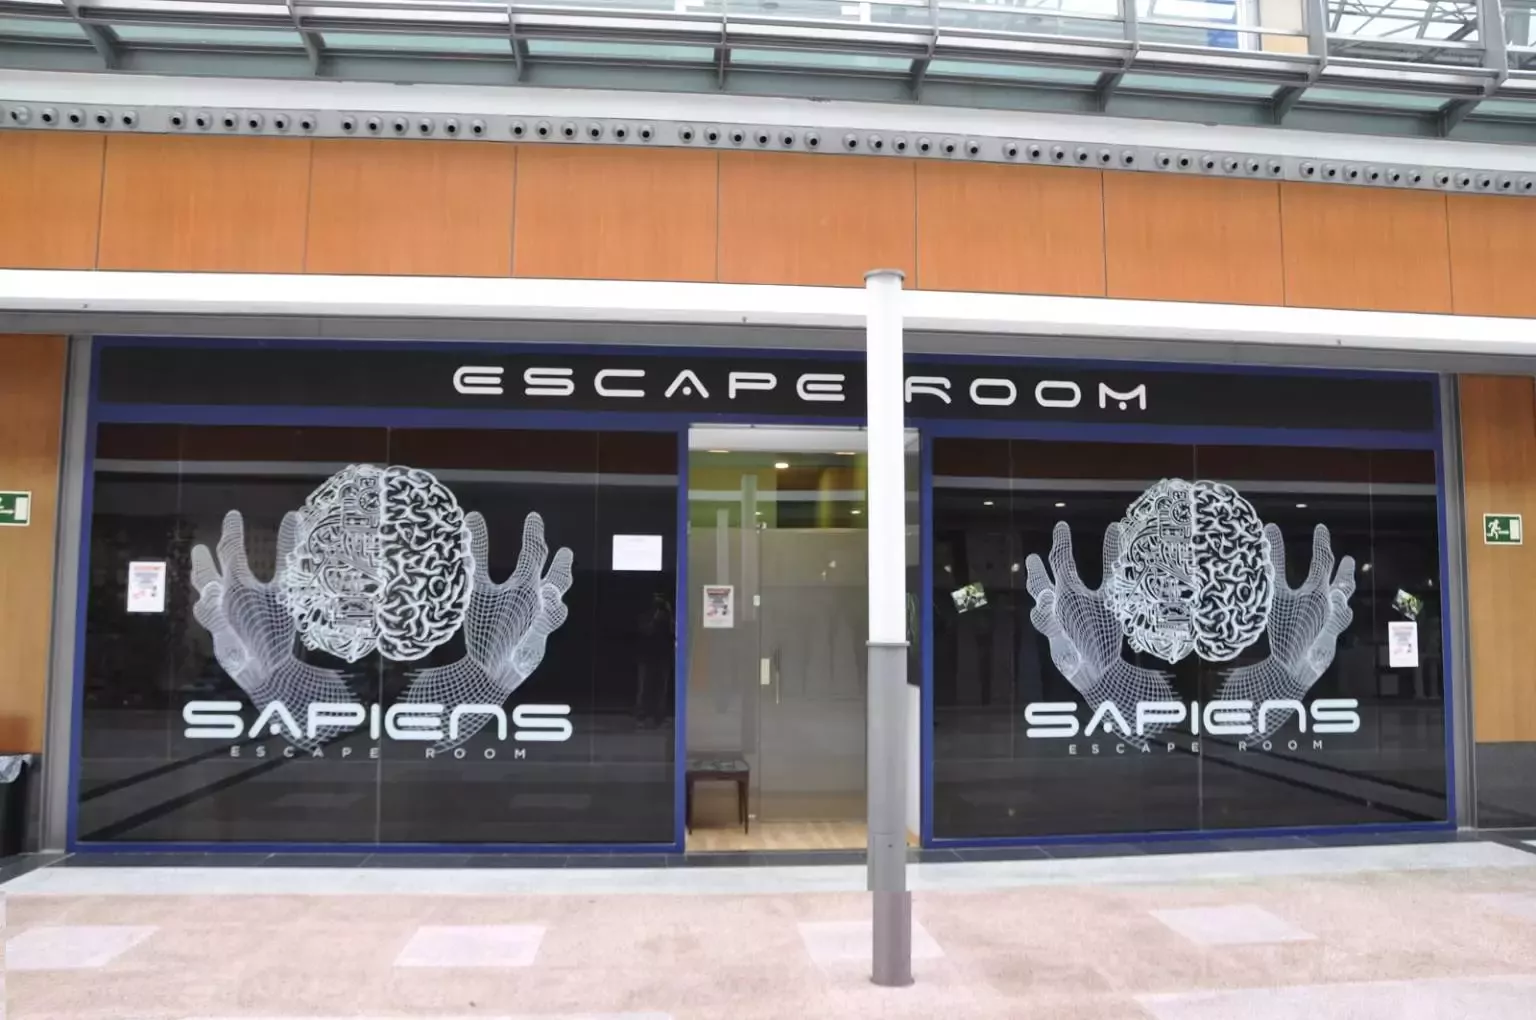 2. Sapiens Escape Room